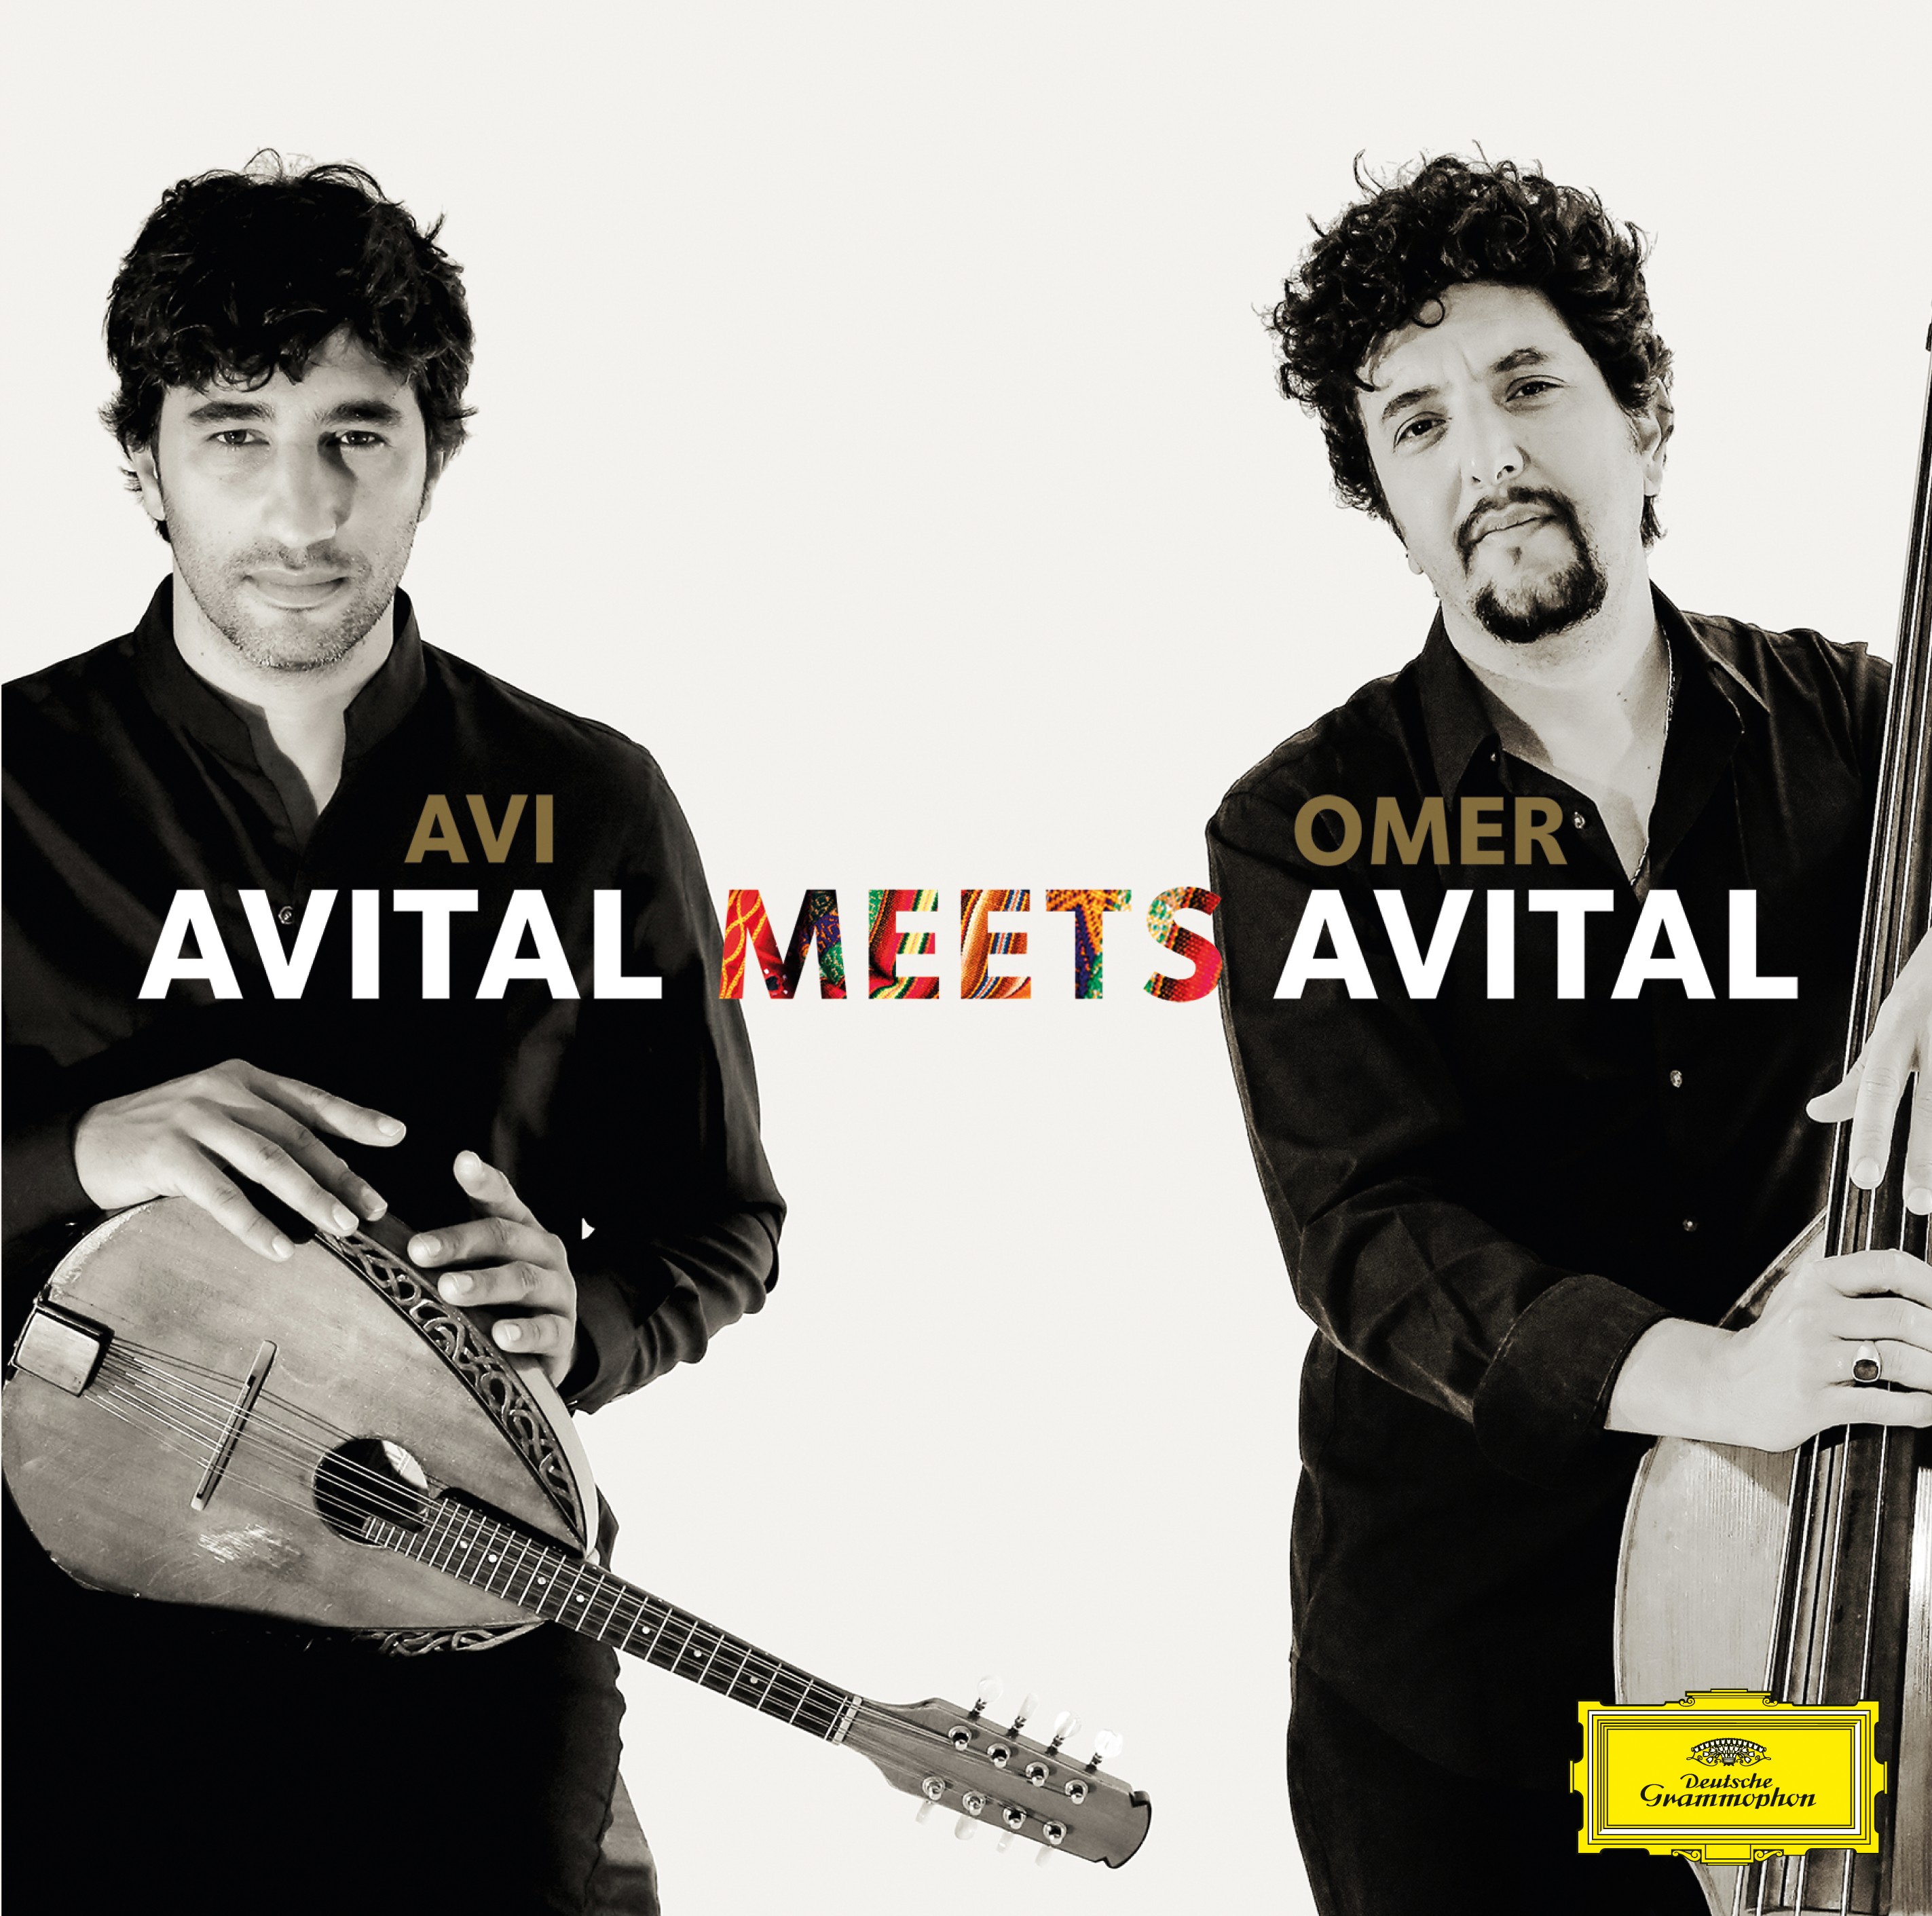 CD Shop - AVITAL AVI AVITAL MEETS AVITAL